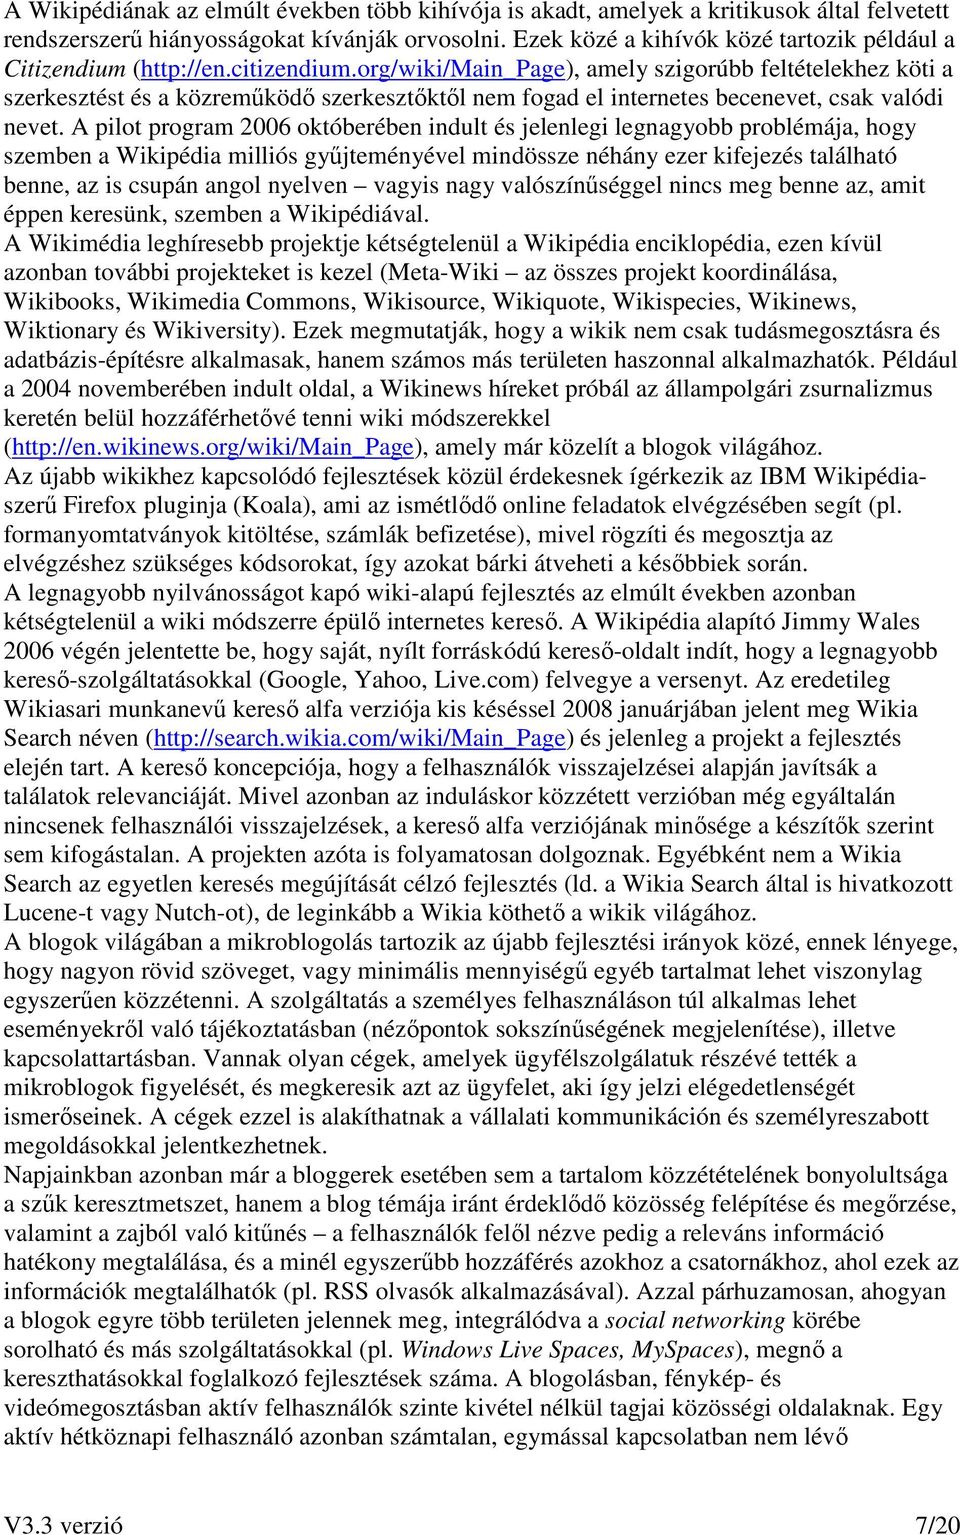 org/wiki/main_page), amely szigorúbb feltételekhez köti a szerkesztést és a közremőködı szerkesztıktıl nem fogad el internetes becenevet, csak valódi nevet.